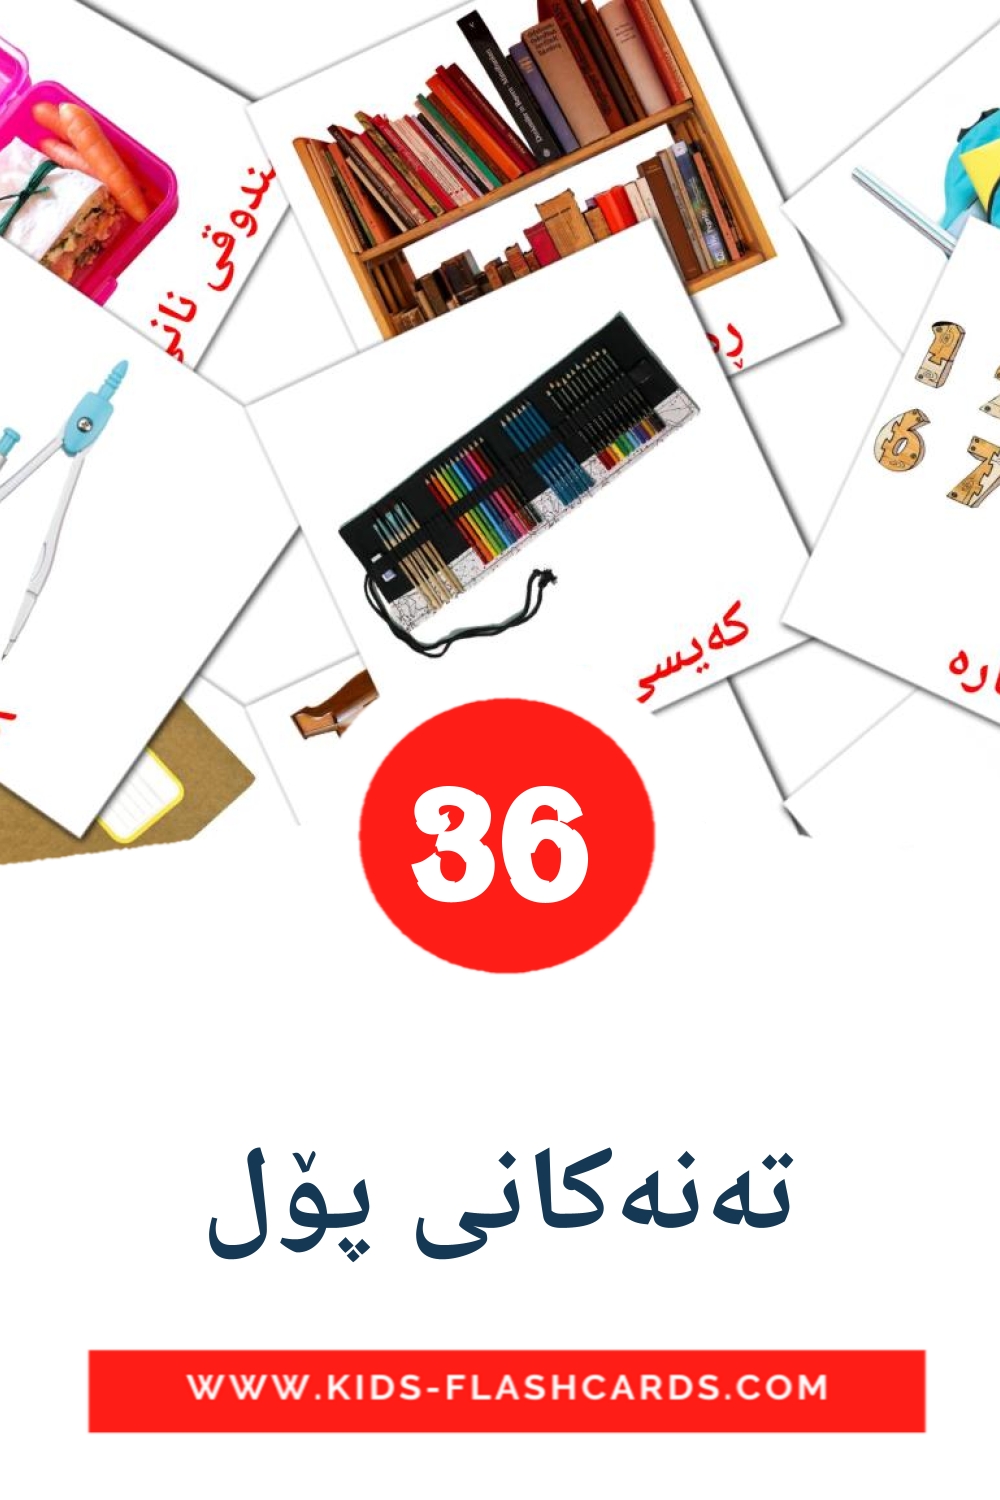 36 تەنەکانی پۆل Bildkarten für den Kindergarten auf Kurdisch(sorani)